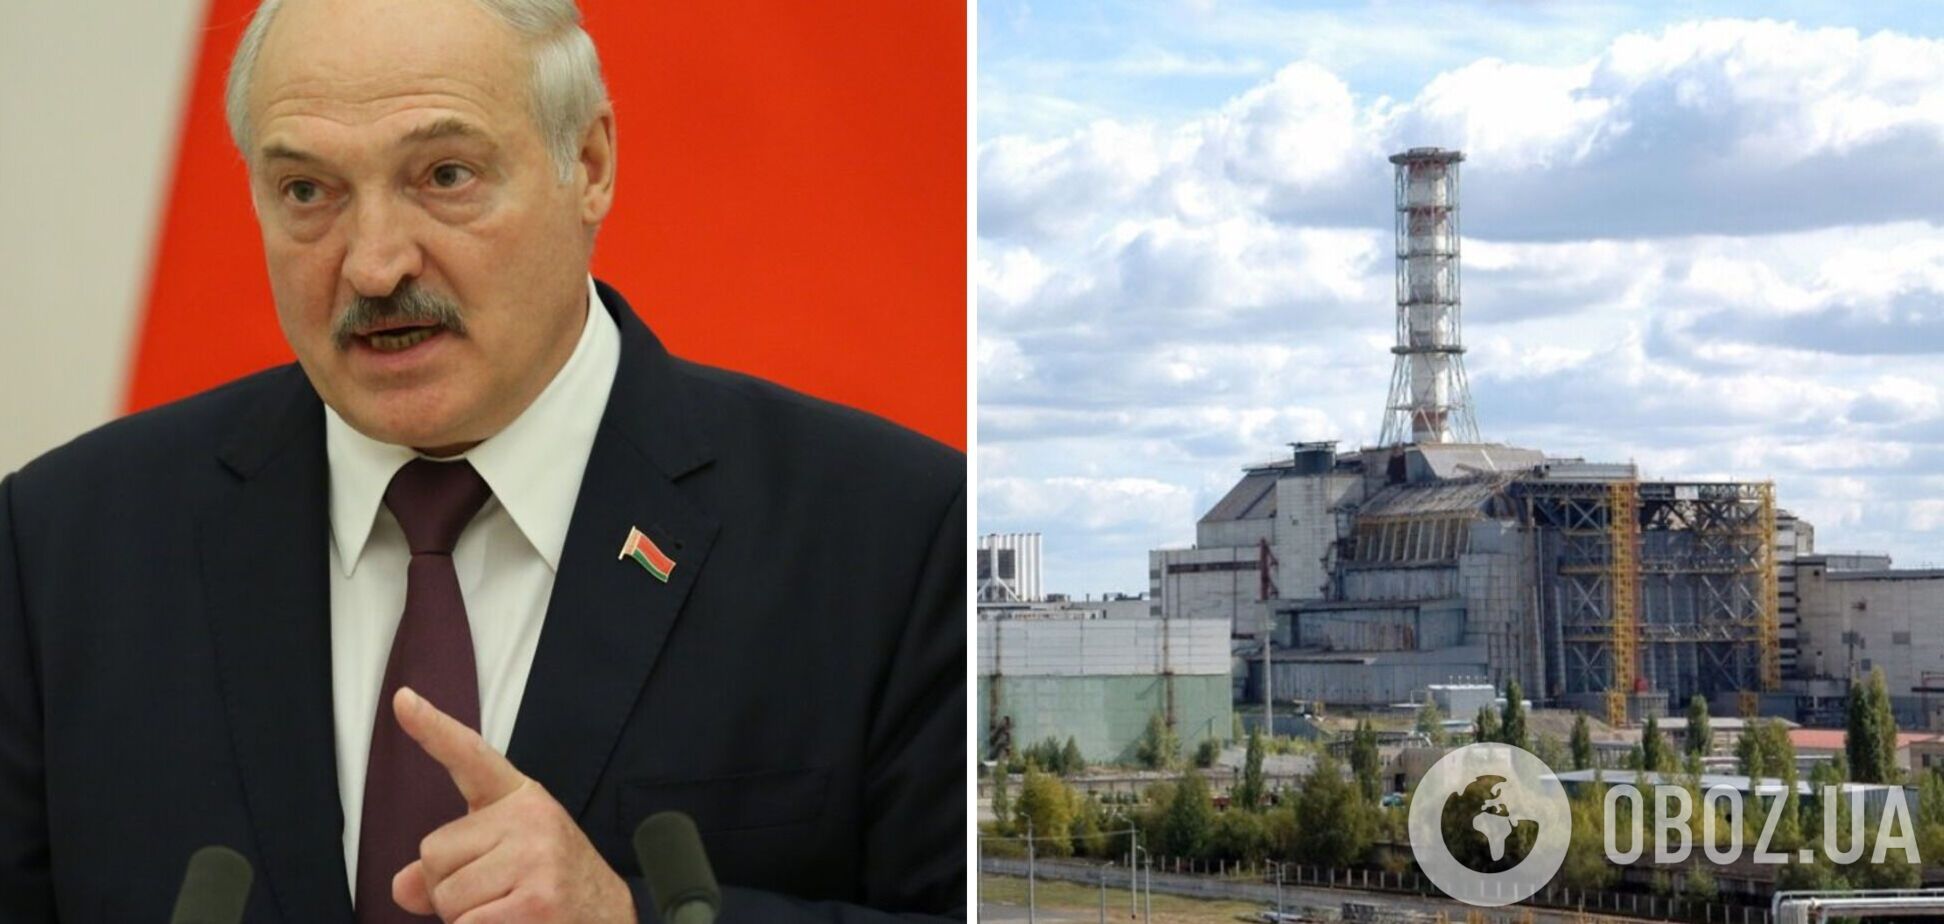  Лукашенко направил беларусских 'специалистов' на Чернобыльскую АЭС